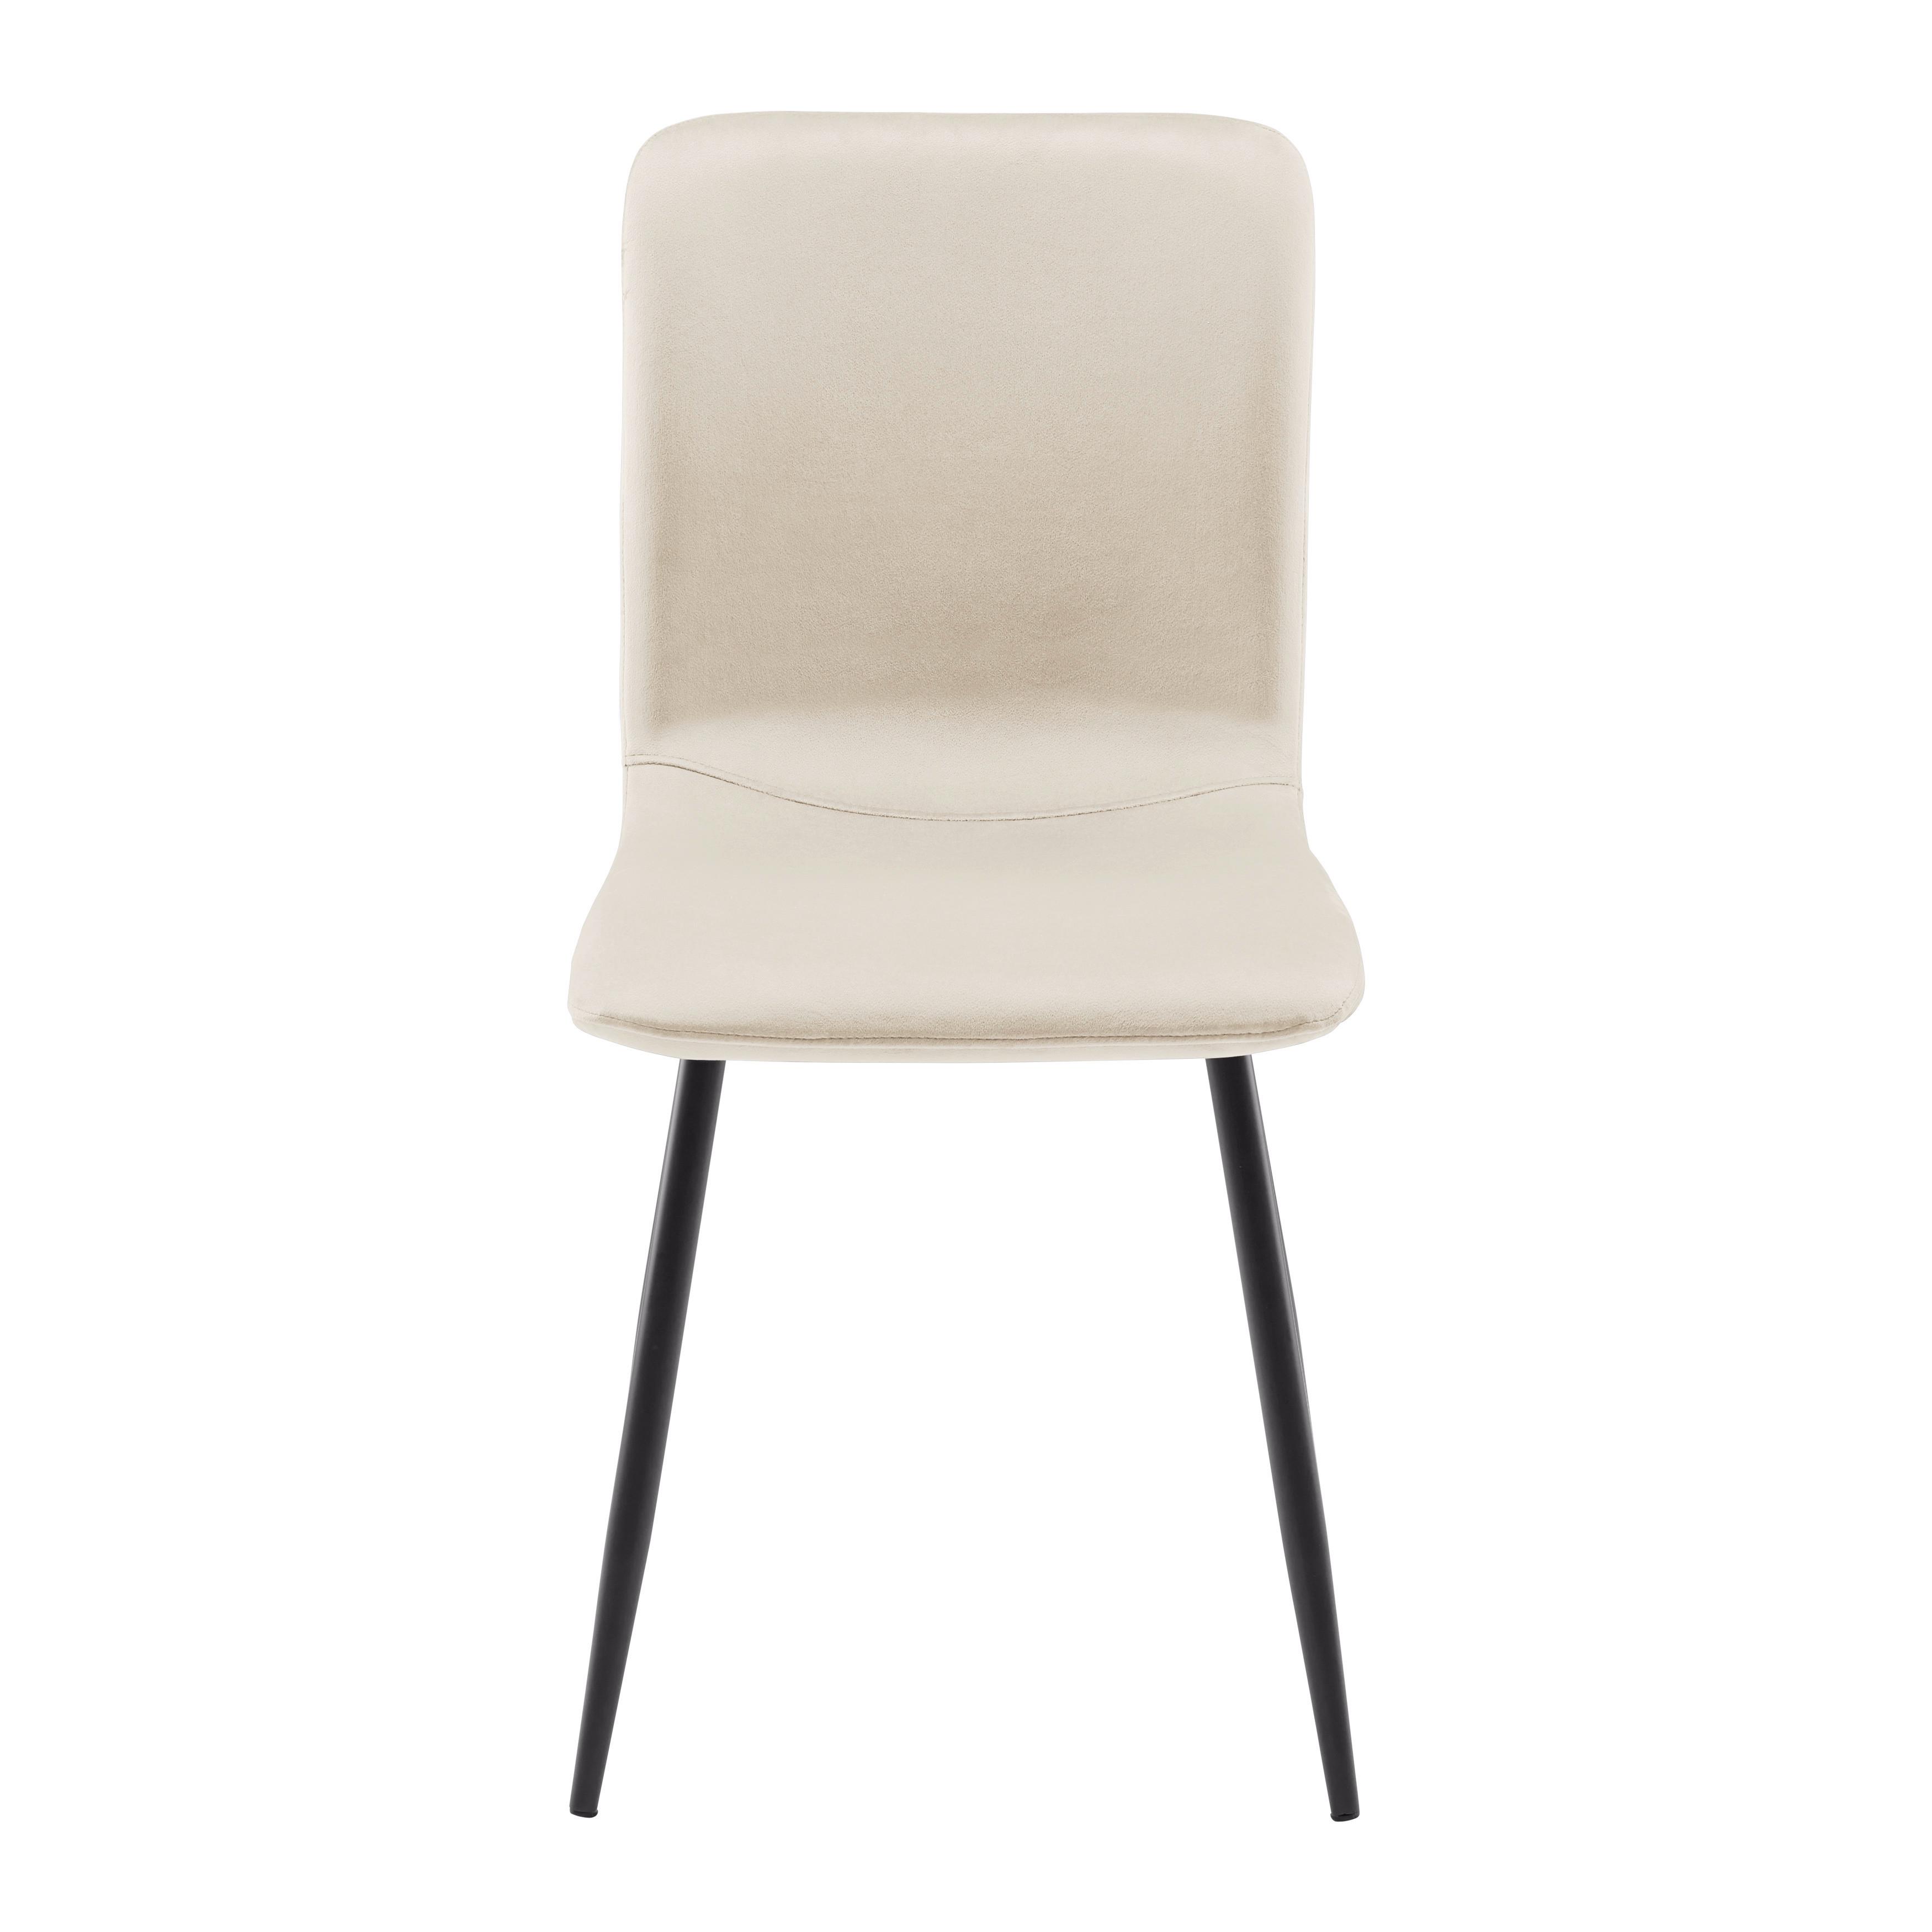 Stuhl "Elif", beige - Beige/Schwarz, MODERN, Textil/Metall (43/86/55cm) - Bessagi Home